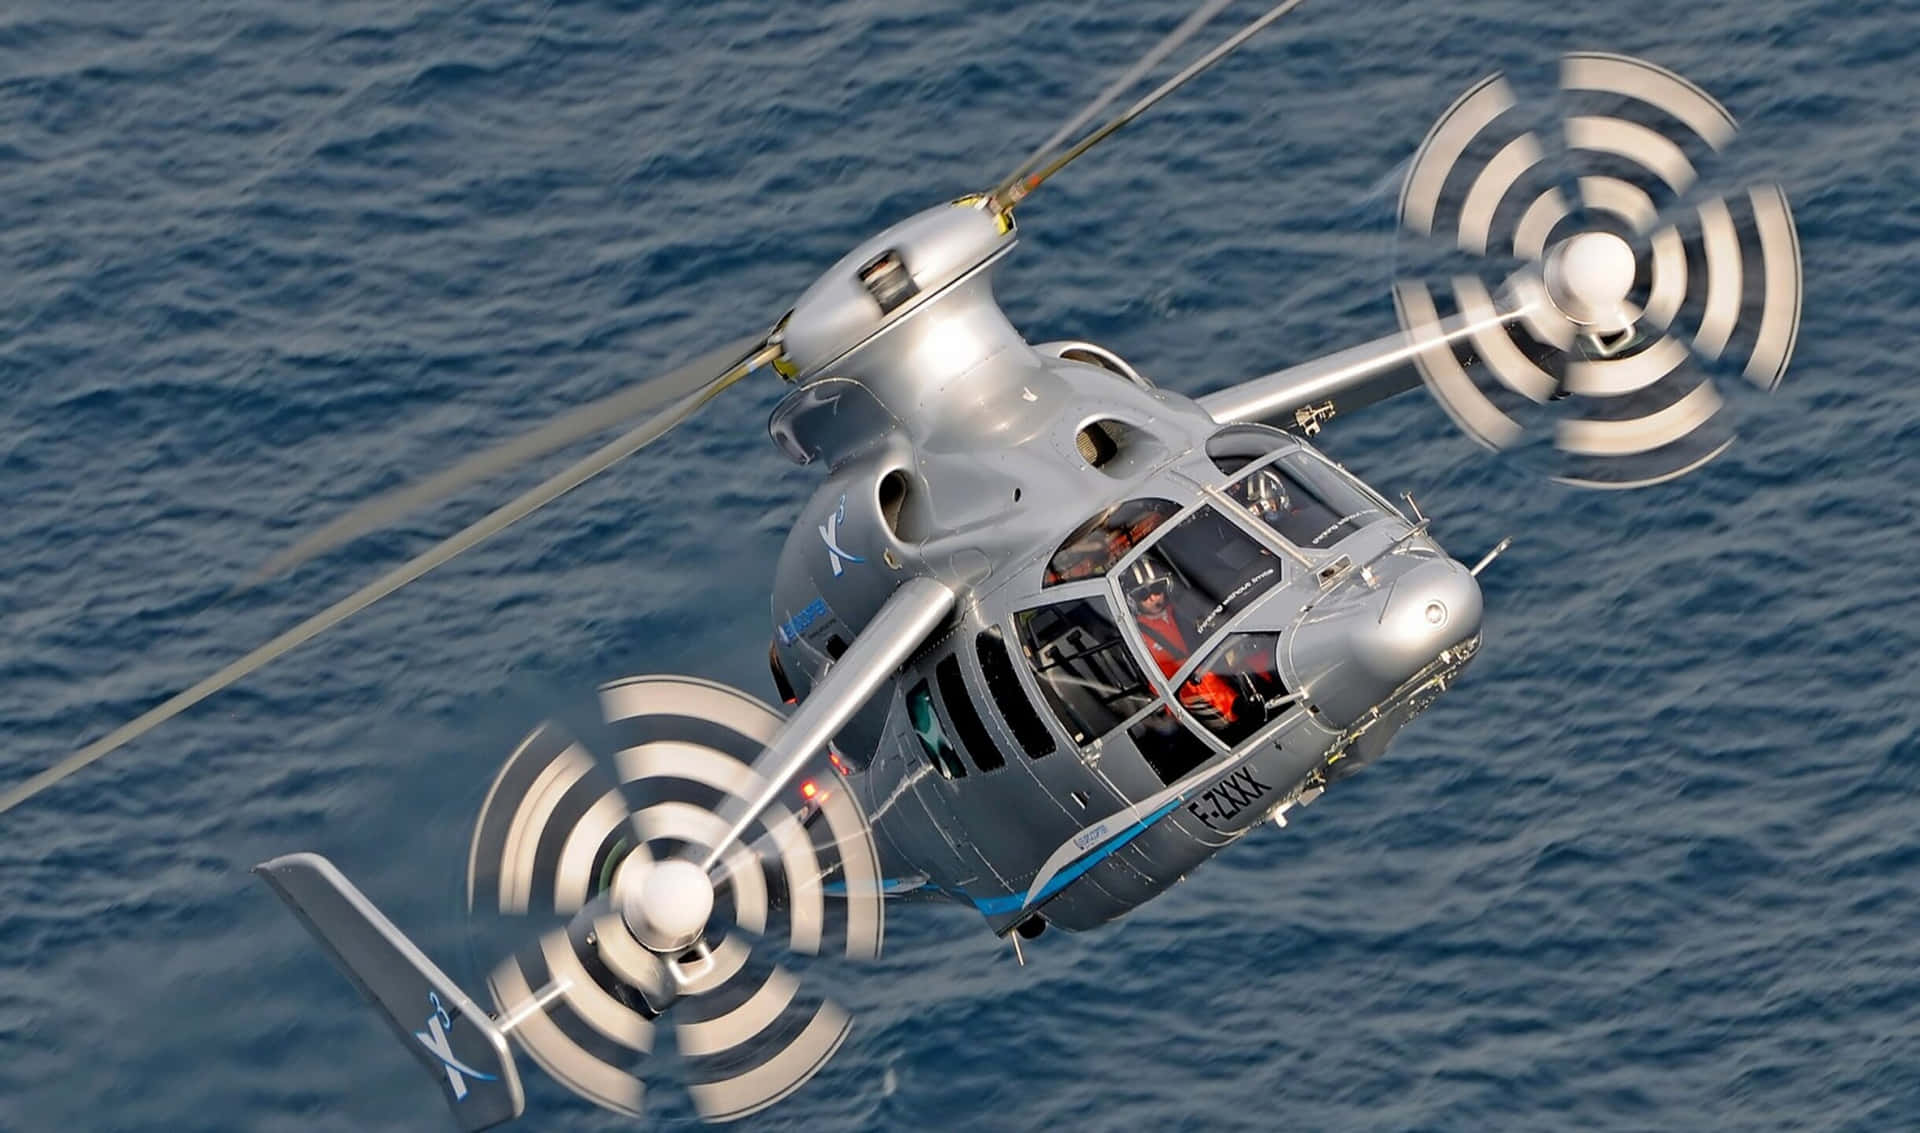 Fotografíade Alta Resolución De Un Helicóptero Azul Y Amarillo Inclinándose Contra Un Cielo Azul Claro.